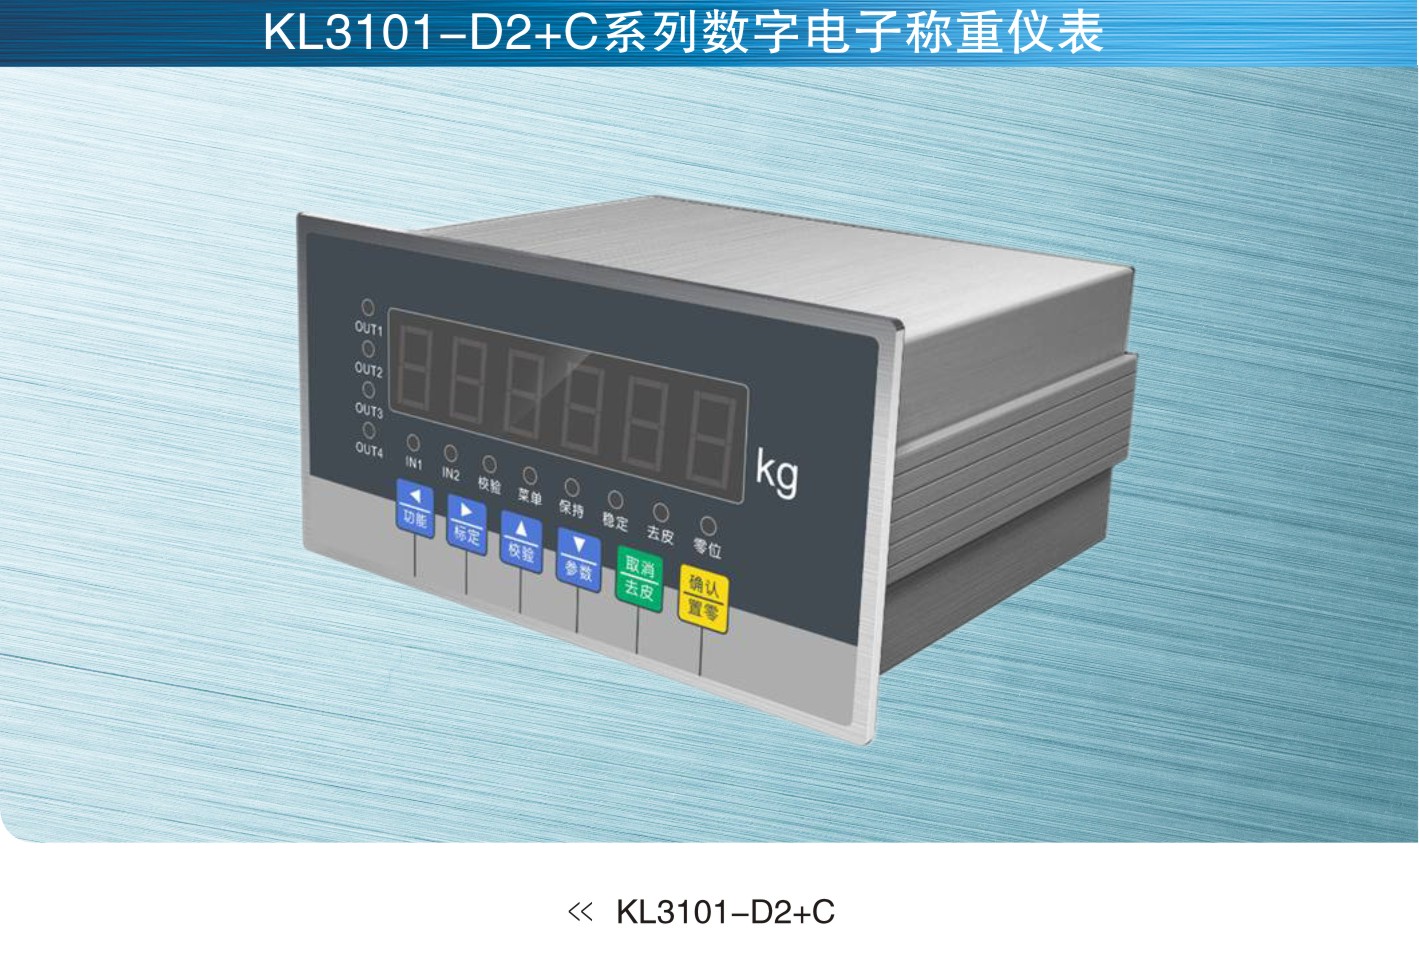 美国MkCells KL3101-D2+C系列数字称重仪表